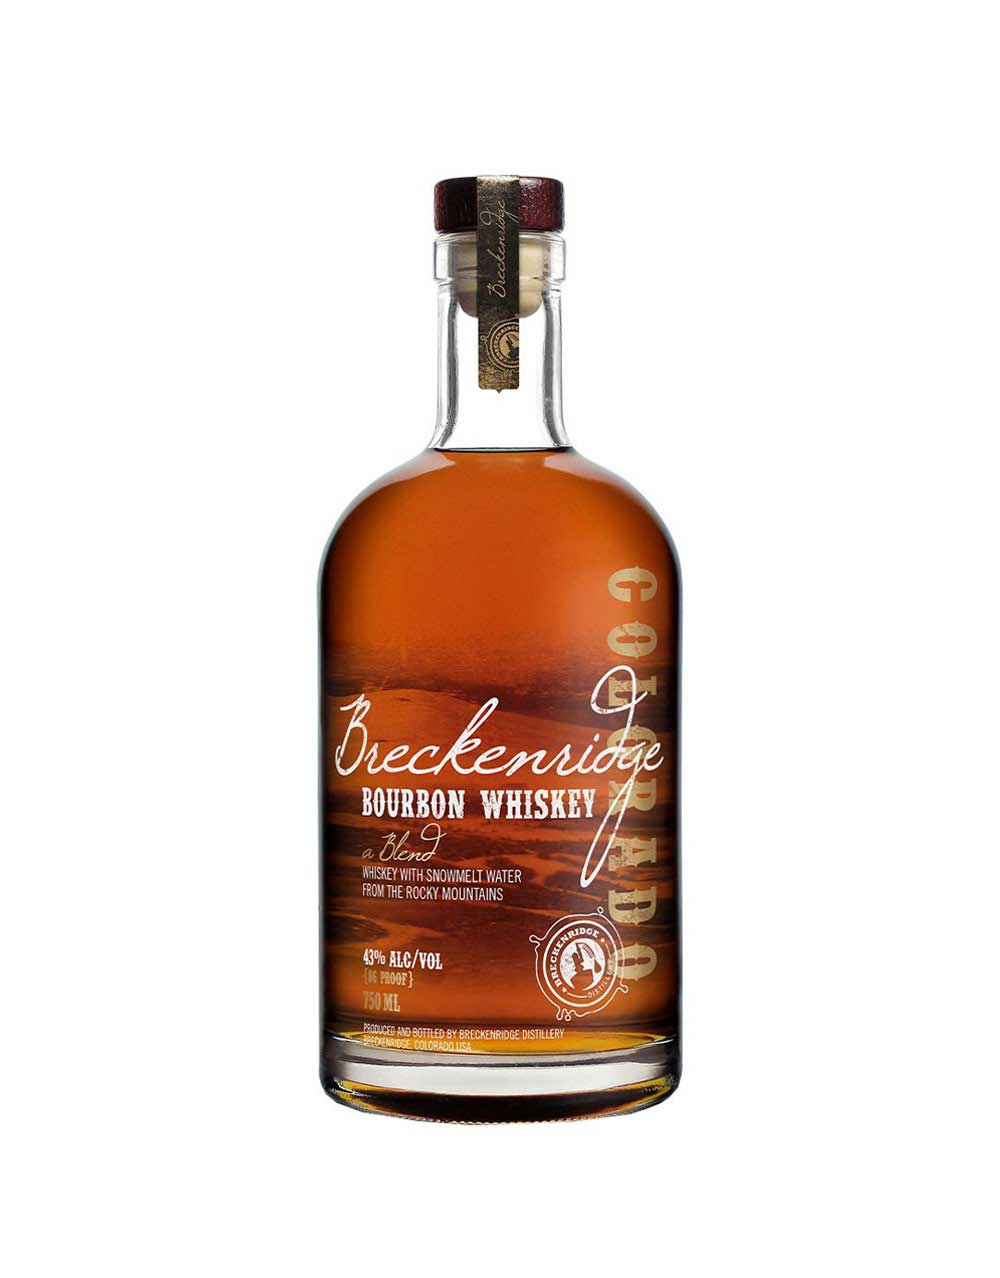 The Glenrothes Sherry Cask Reserve Single Malt Scotch Whisky